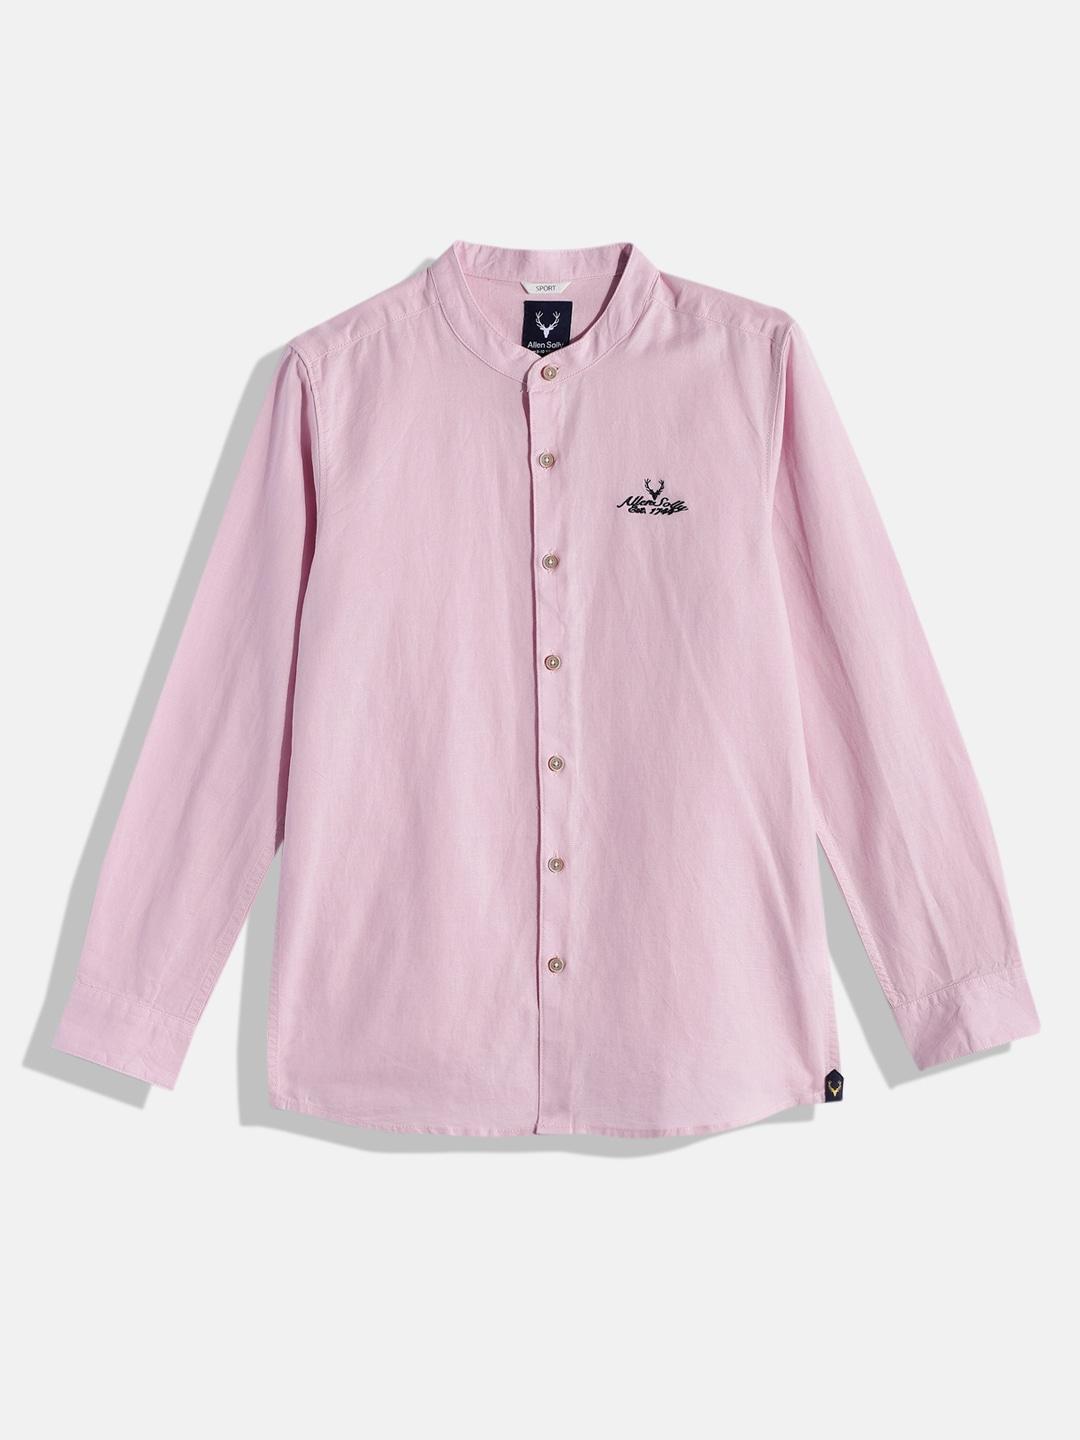 allen-solly-junior-boys-pink-solid-casual-shirt